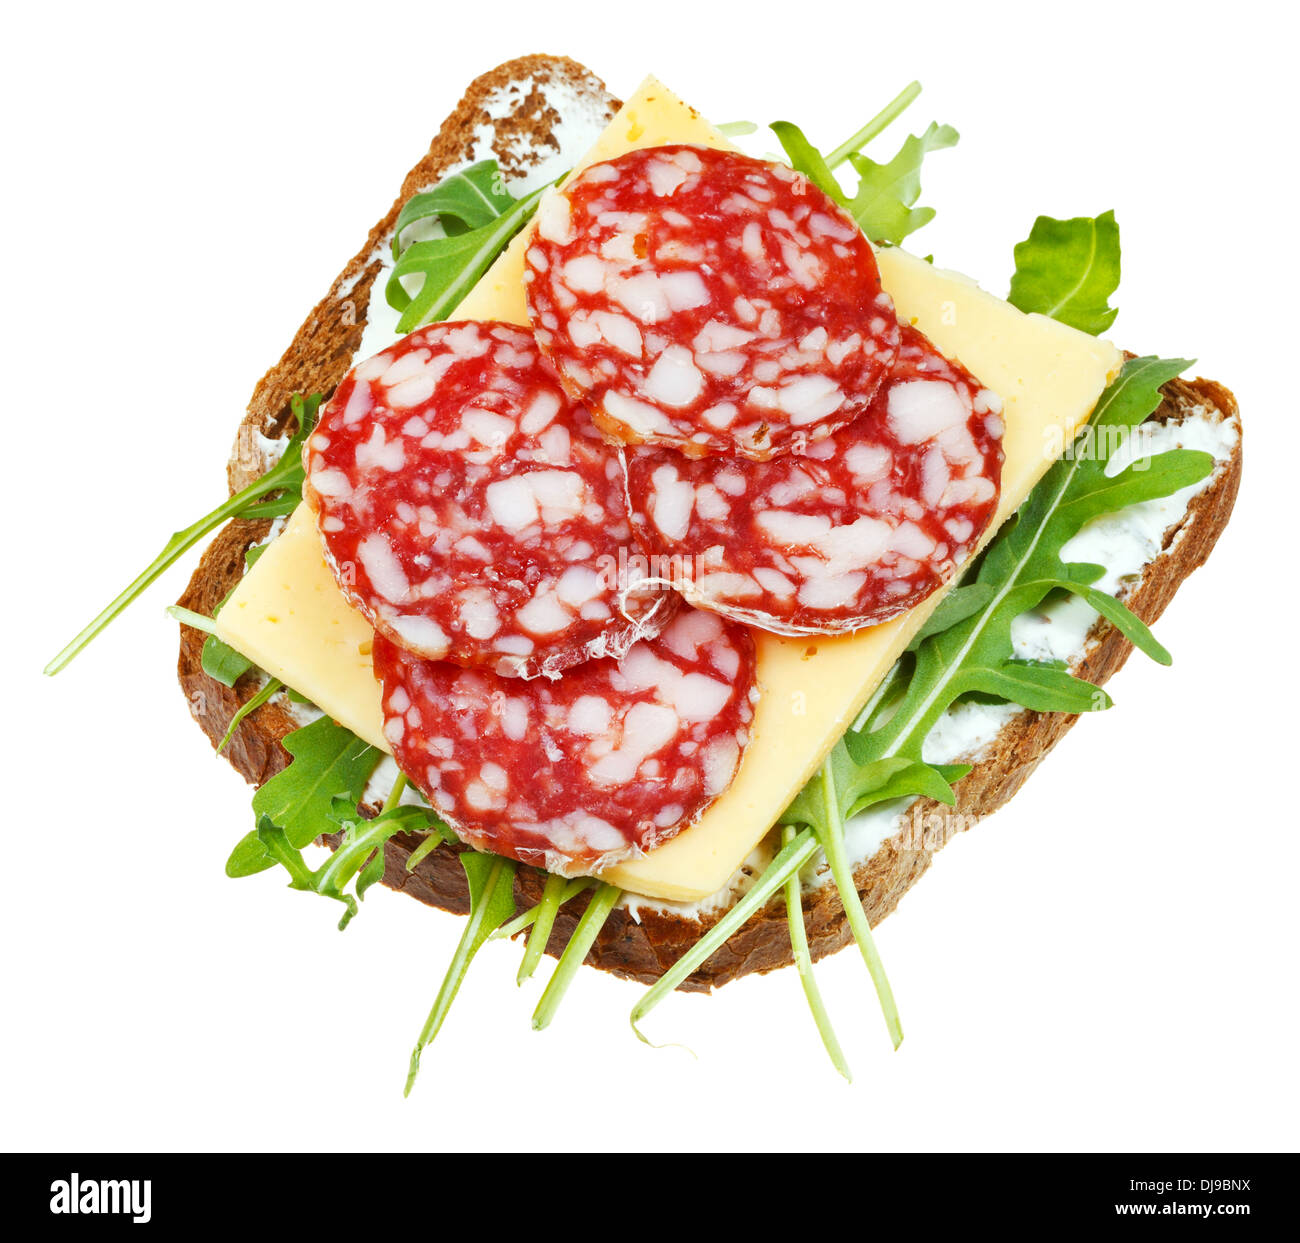 Sandwich de pain de seigle, salami, fromage et roquette fraîche isolé sur fond blanc Banque D'Images